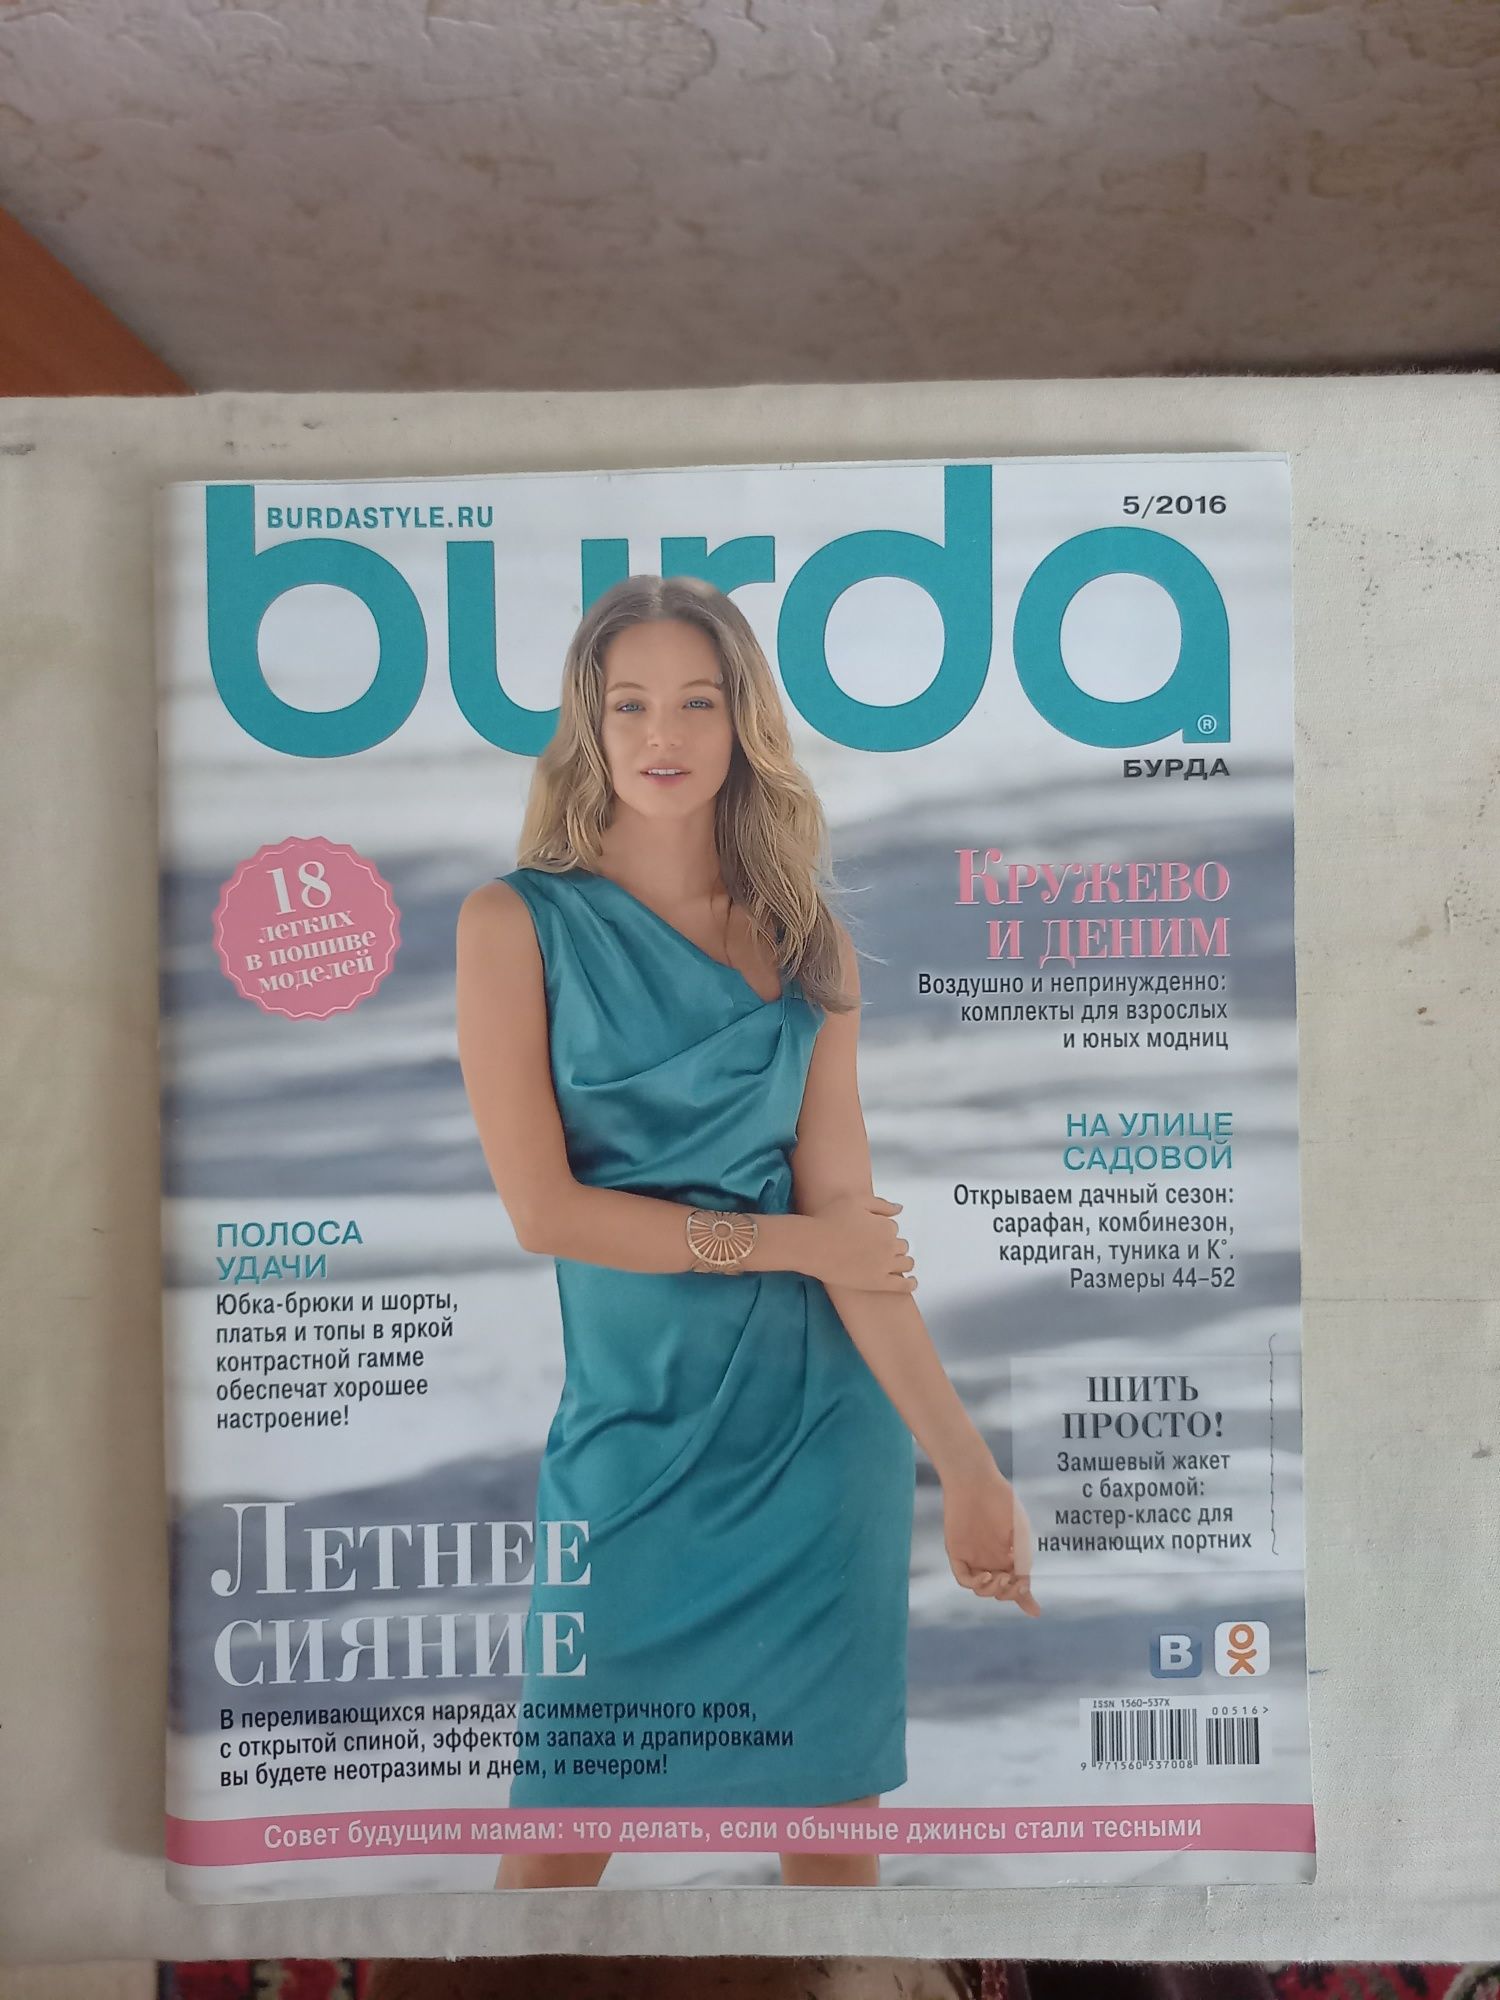 Журнал burda май 2016 года.